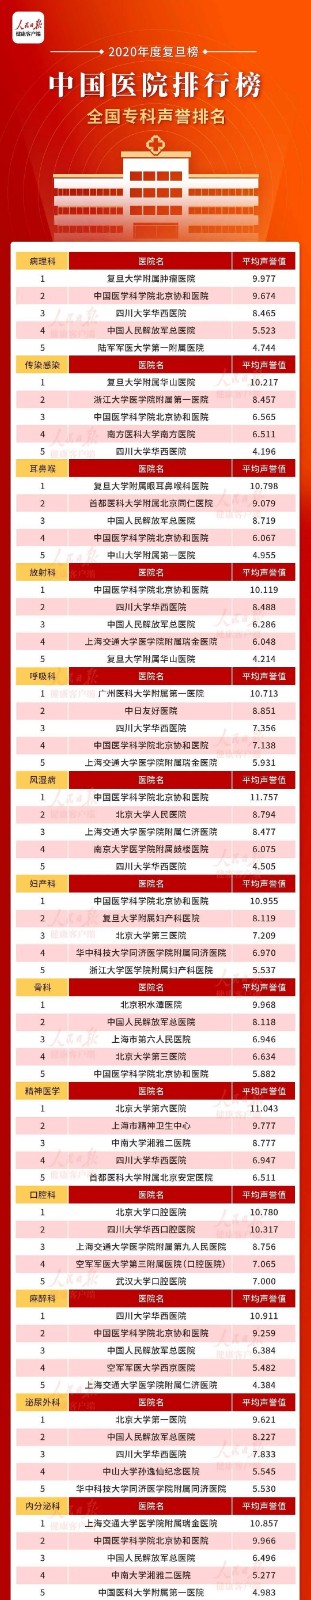 2020年度中国医院排行榜发布_图1-4